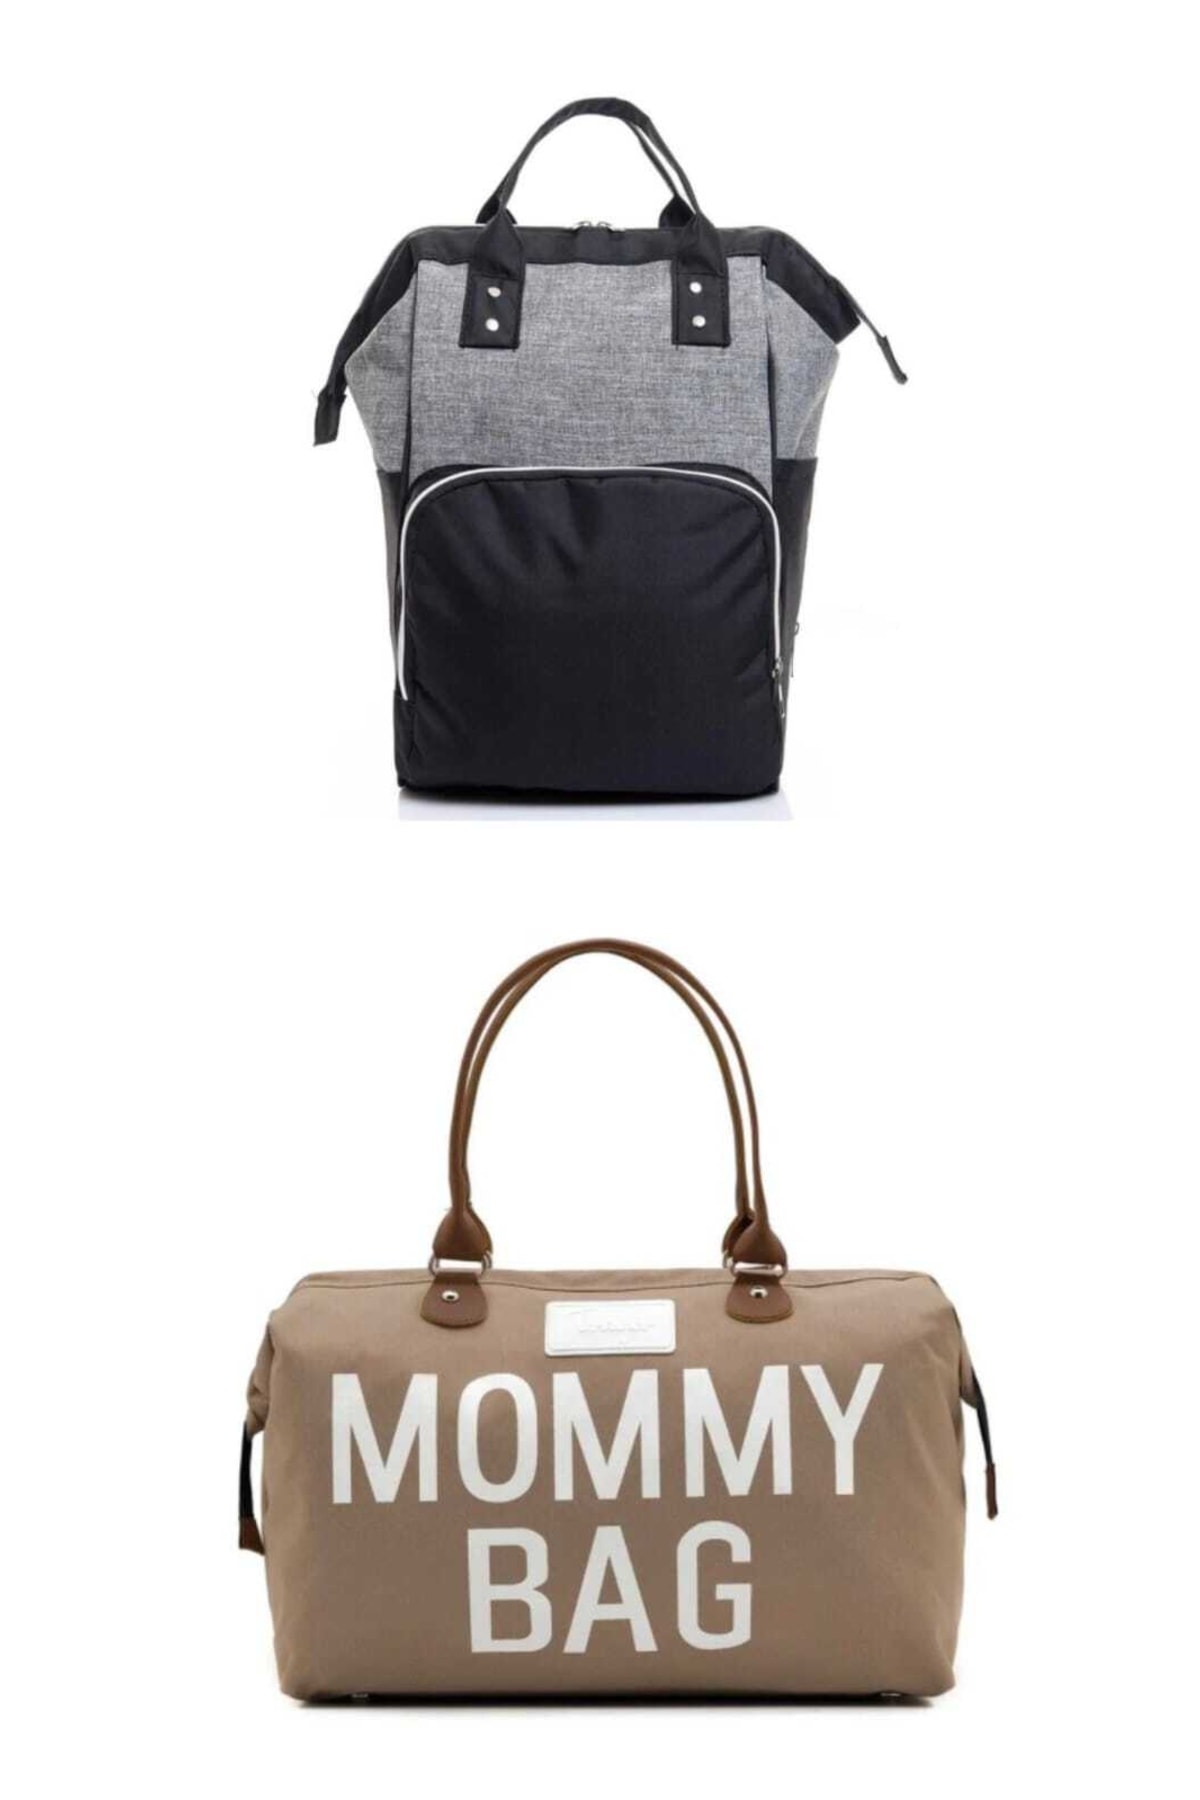 RUBBAG Mommy Bag Bebek Çantası Ve Anne Bebek Bakım Çantası